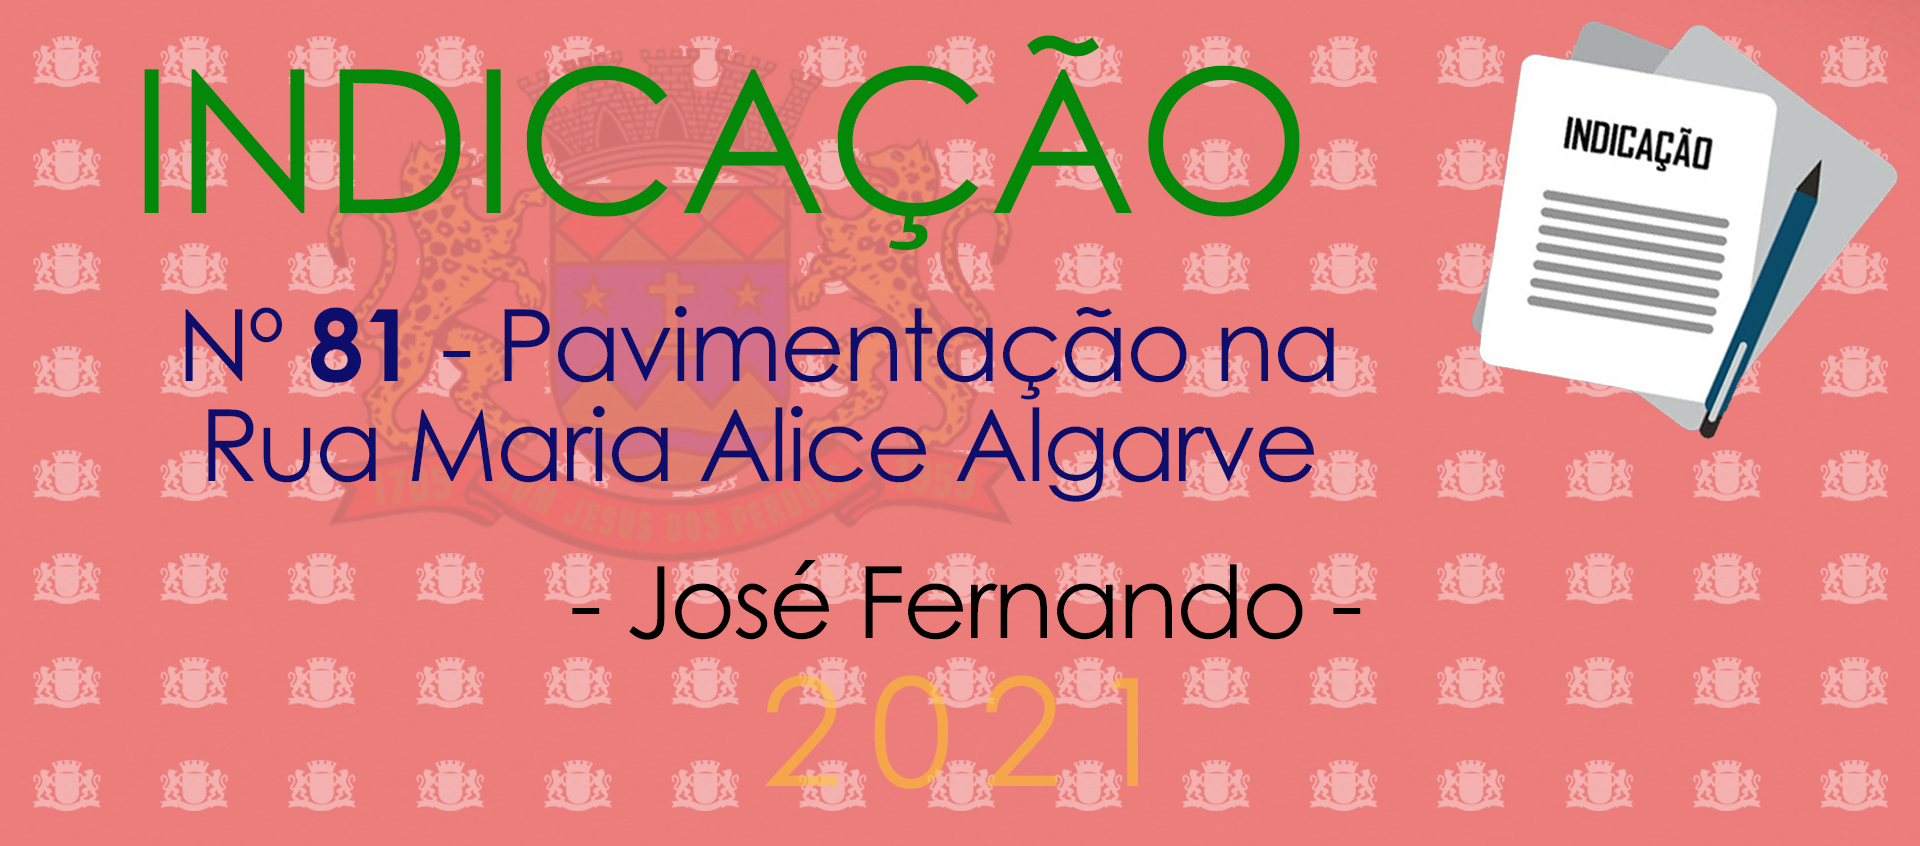 Indicação 81-2021 - Pavimentação da Rua Maria Alice Algarve